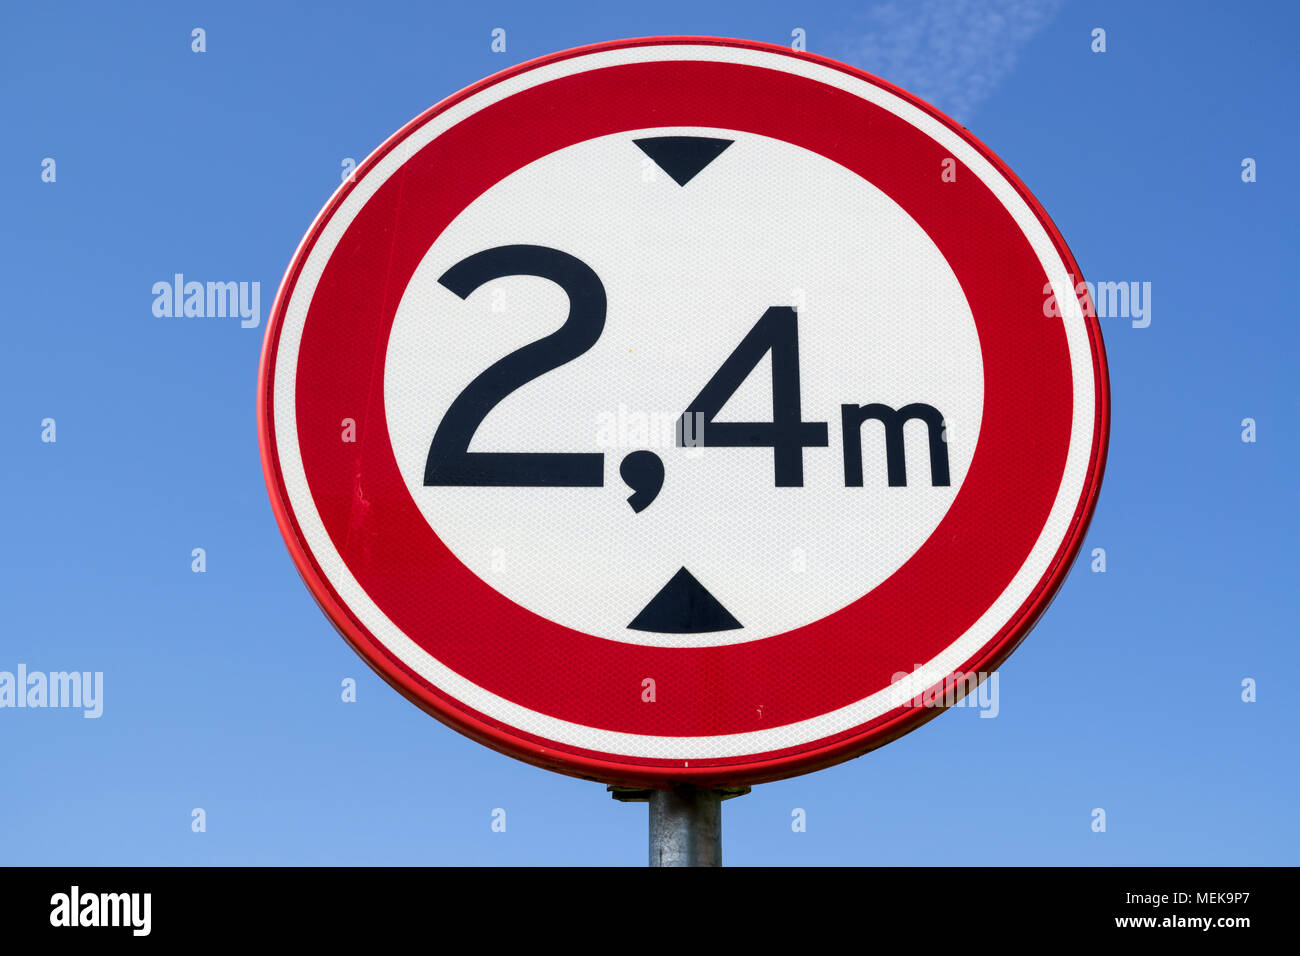 Panneau routier néerlandais : pas d'accès pour les véhicules d'une hauteur supérieure à 2,4 m Banque D'Images